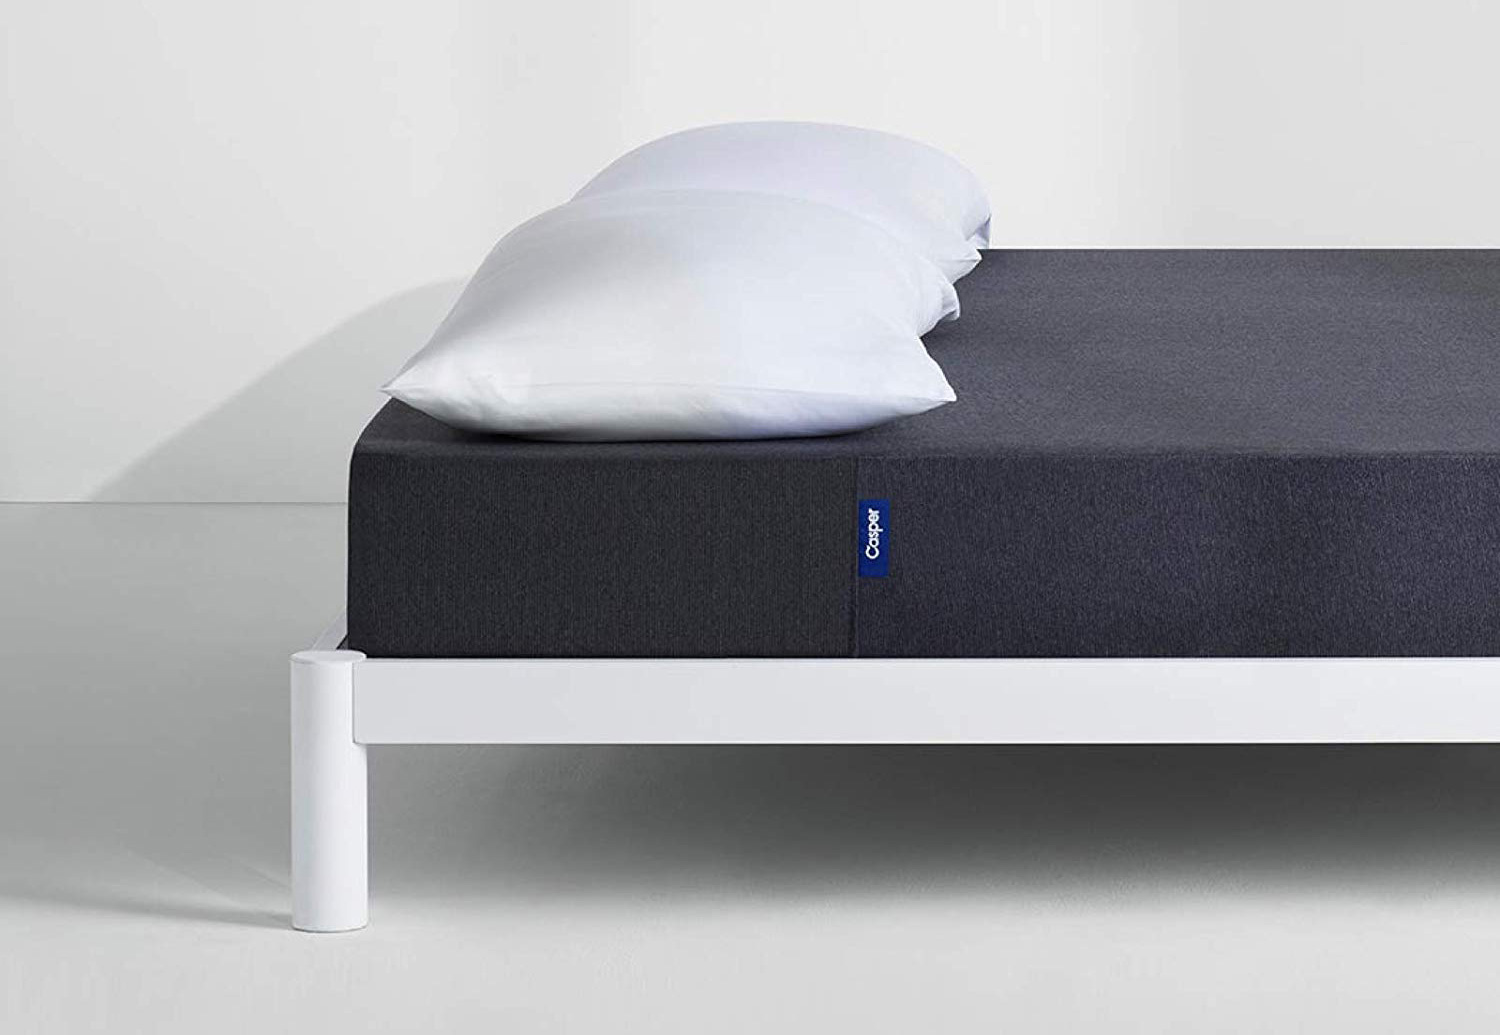 the casper mattress price increase